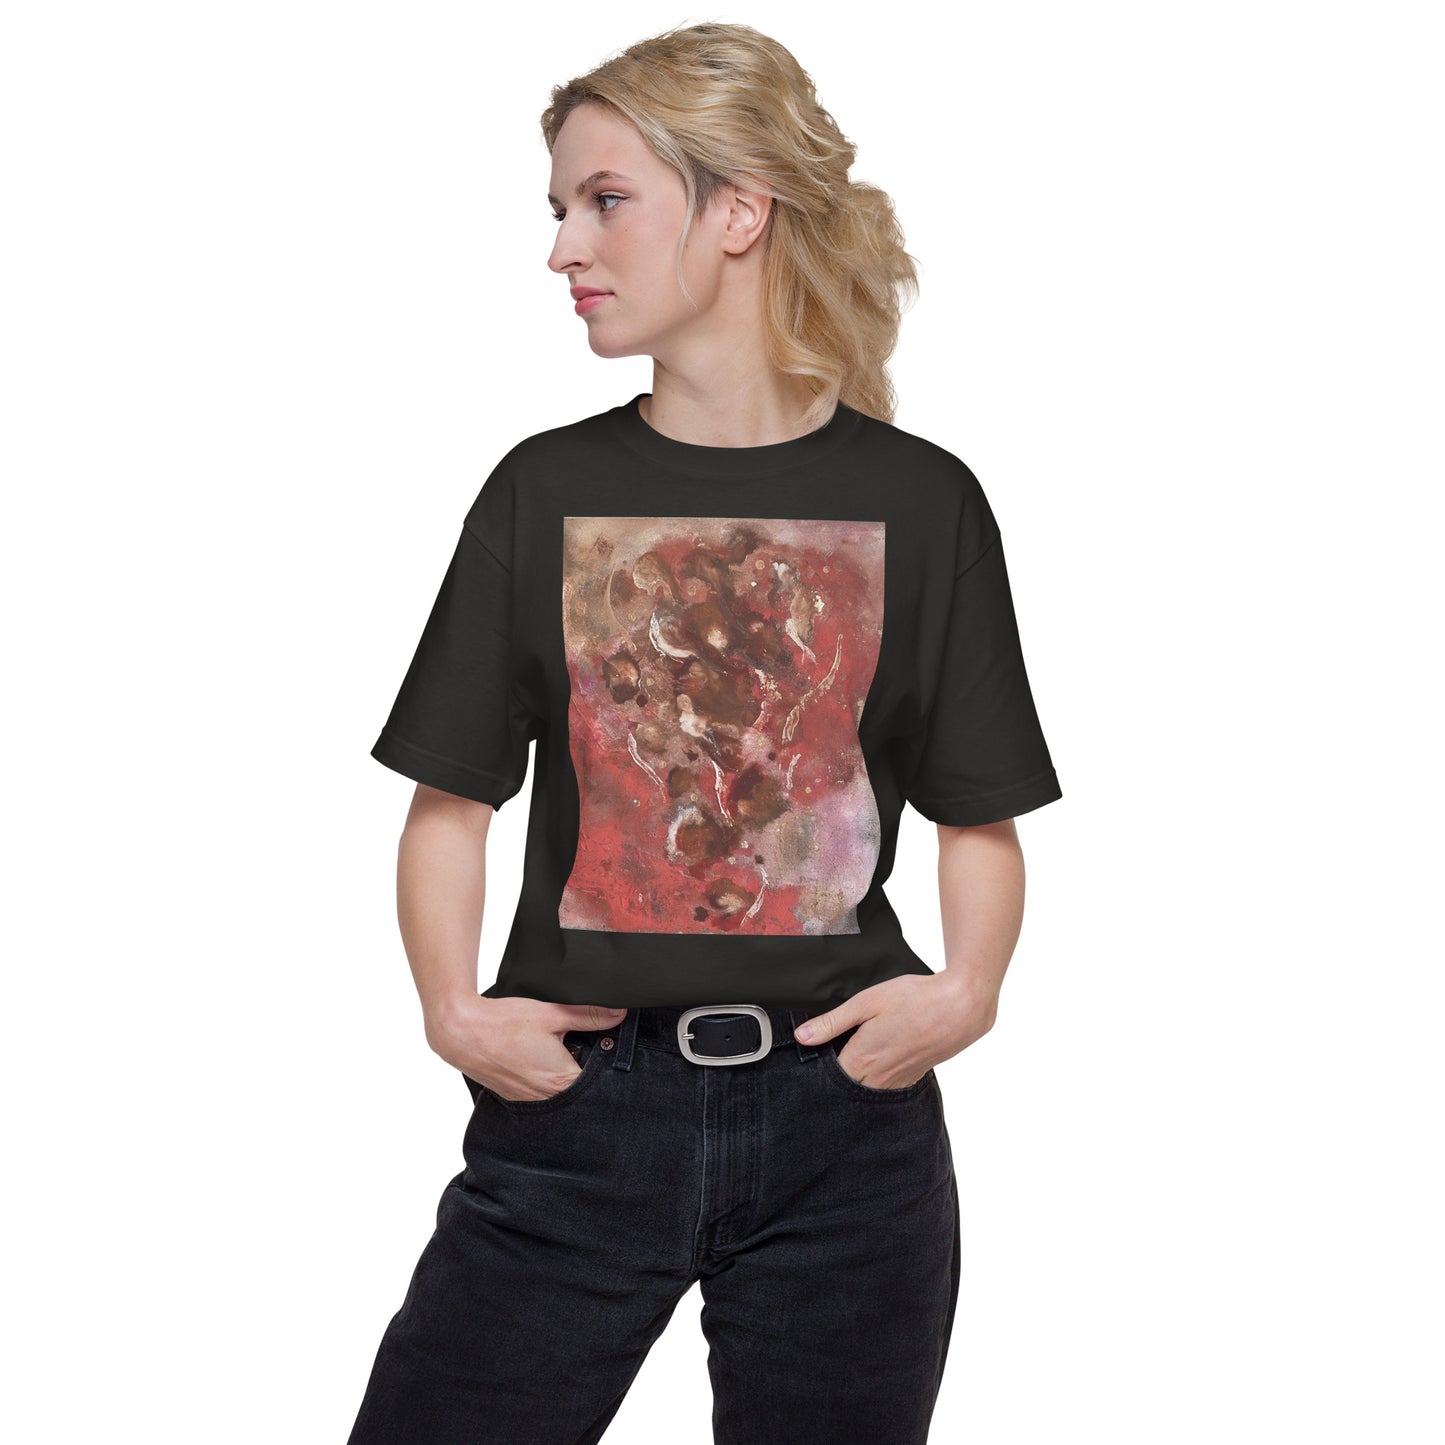 004_SOU_17 愛の燃え殻 前面プリント Tシャツ アートをデザイン